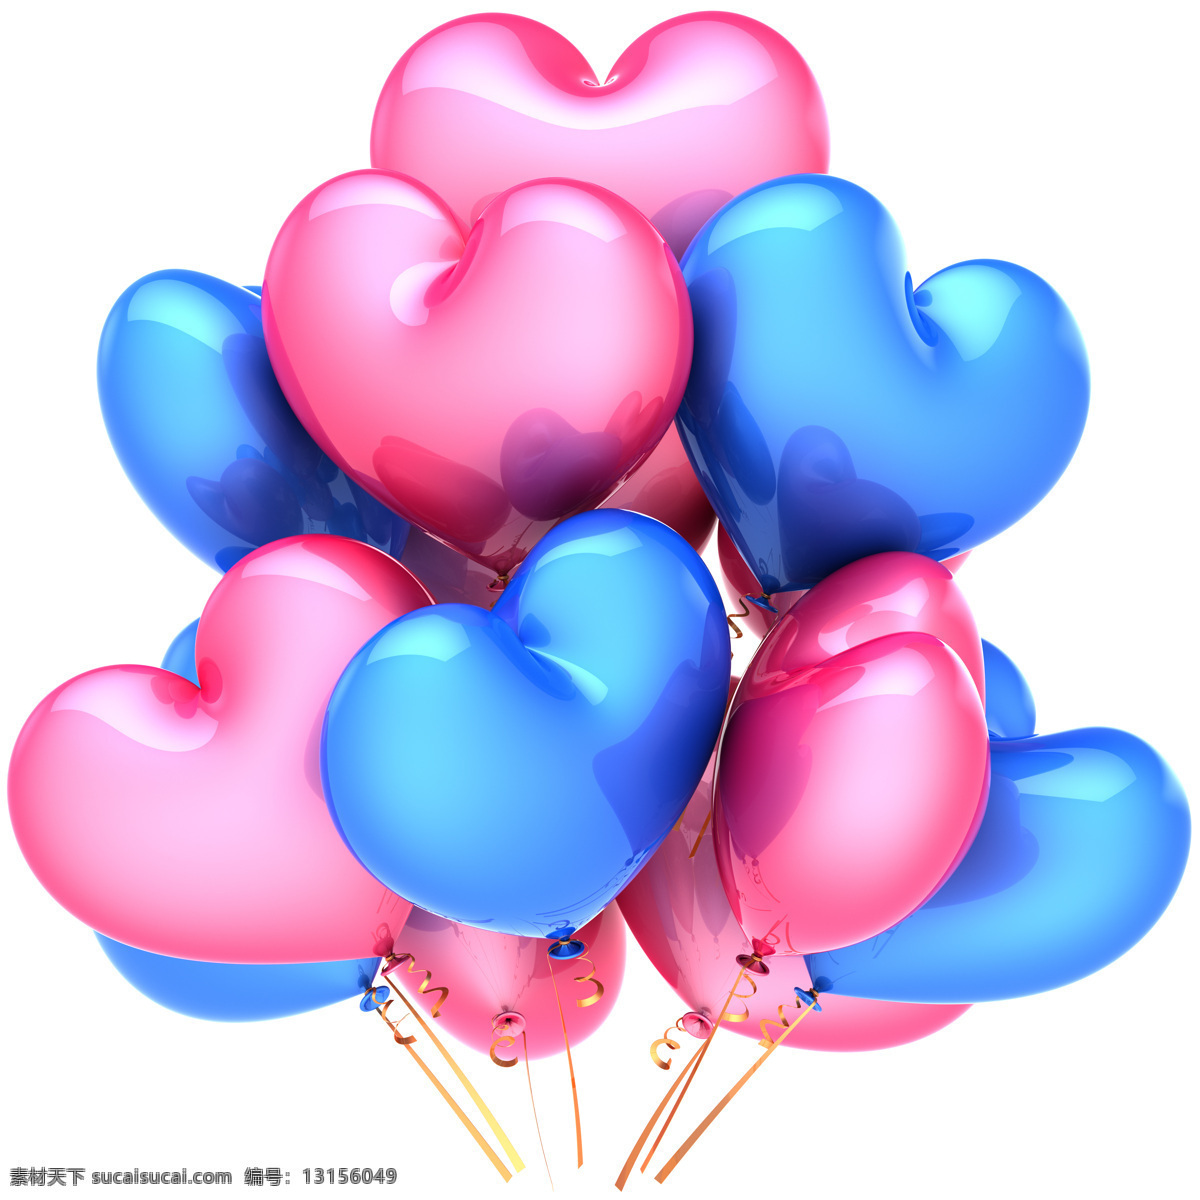 爱心 气球 桃心 心形气球 浪漫情人节 情人节素材 爱心图片 生活百科